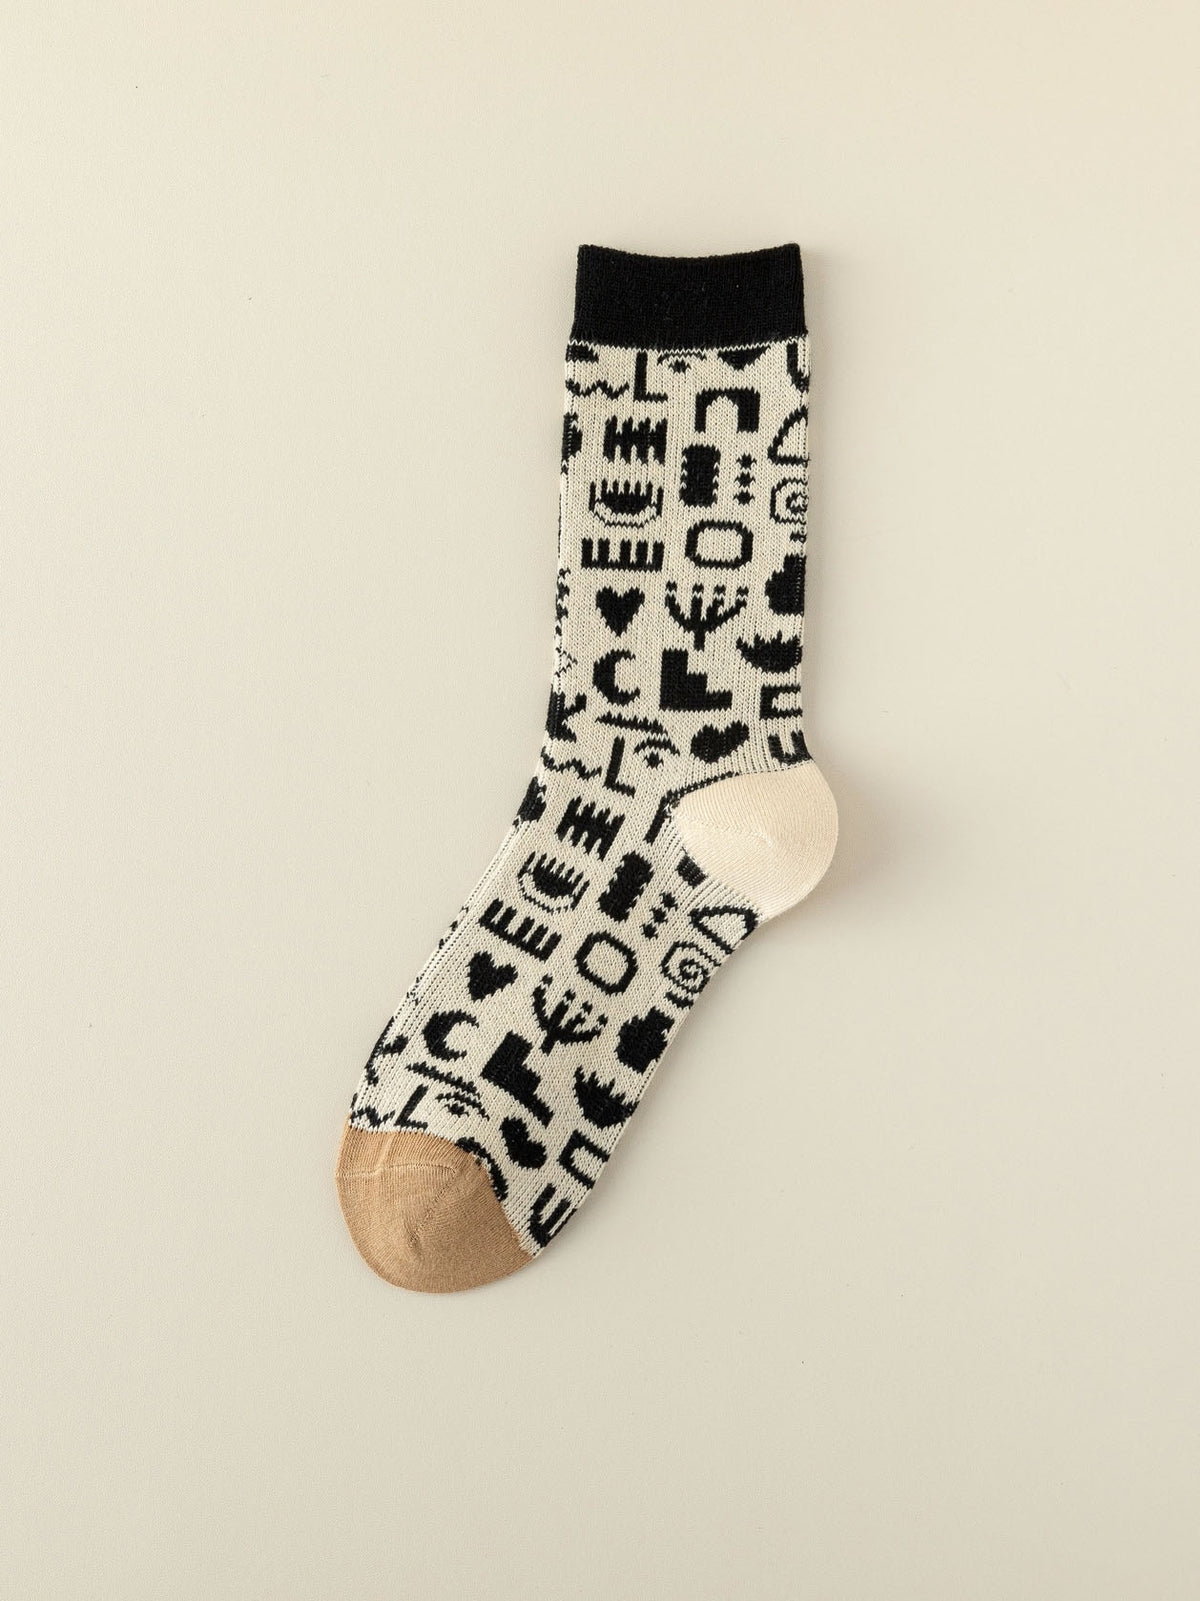 Socke mit Formen und Muster in schwarz und weiß mit beigem Zwickel und weißer Ferse